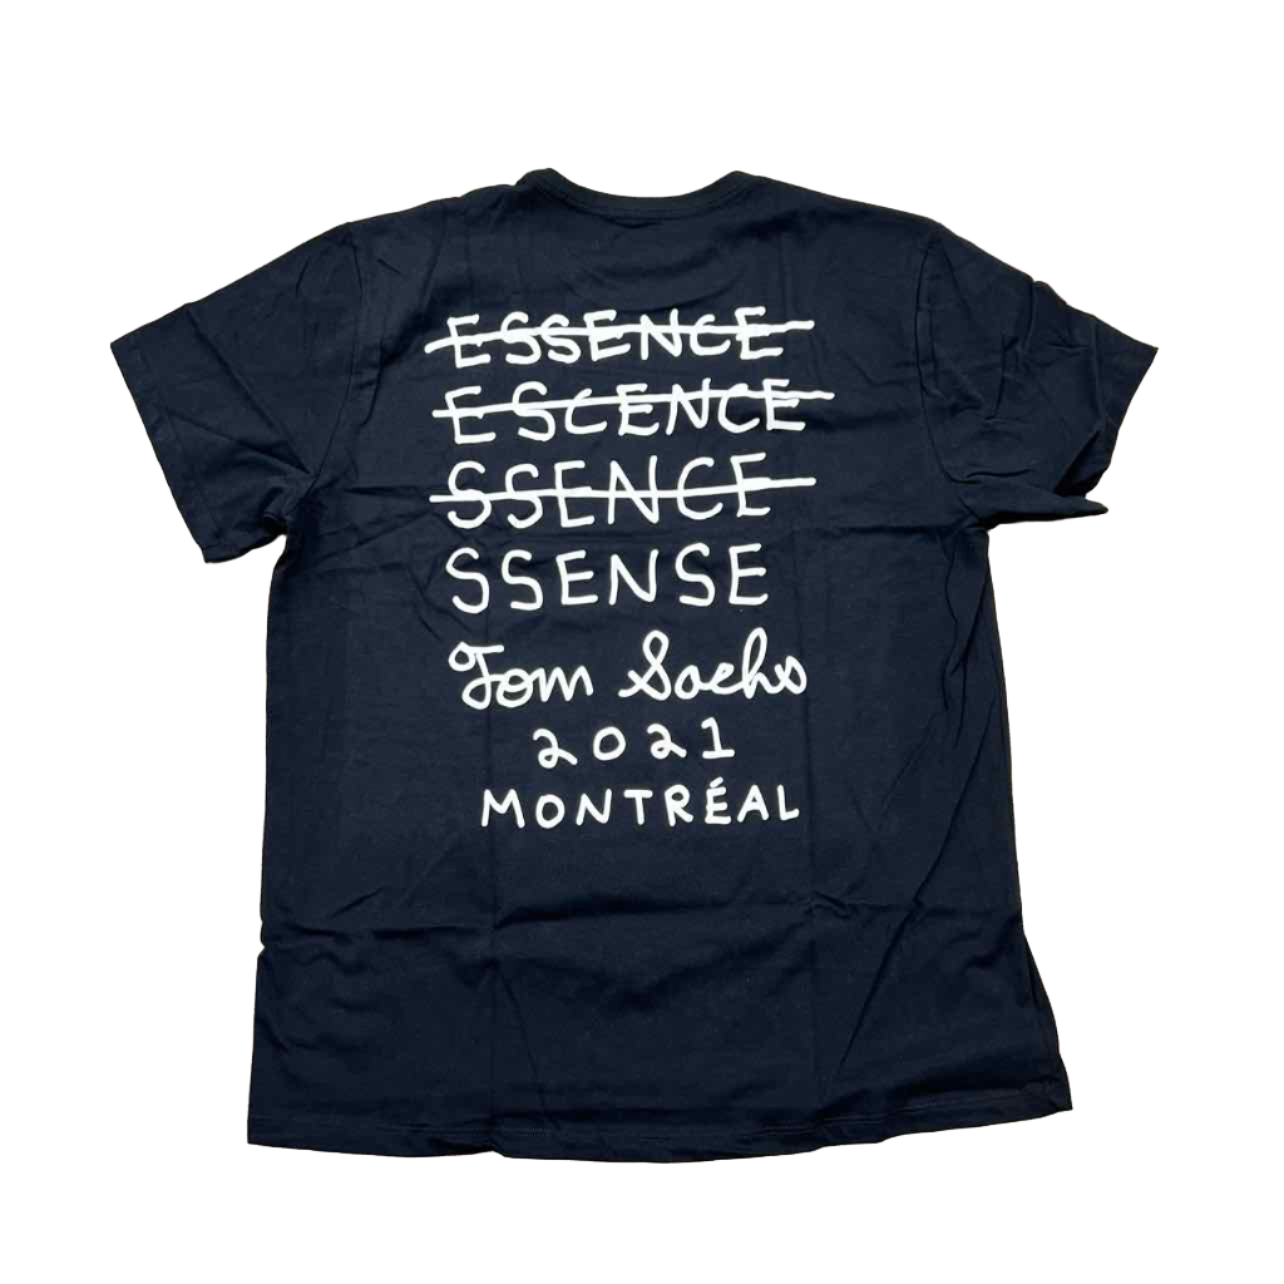 Tom Sachs T-Shirt "SSENSE" Black New Size S